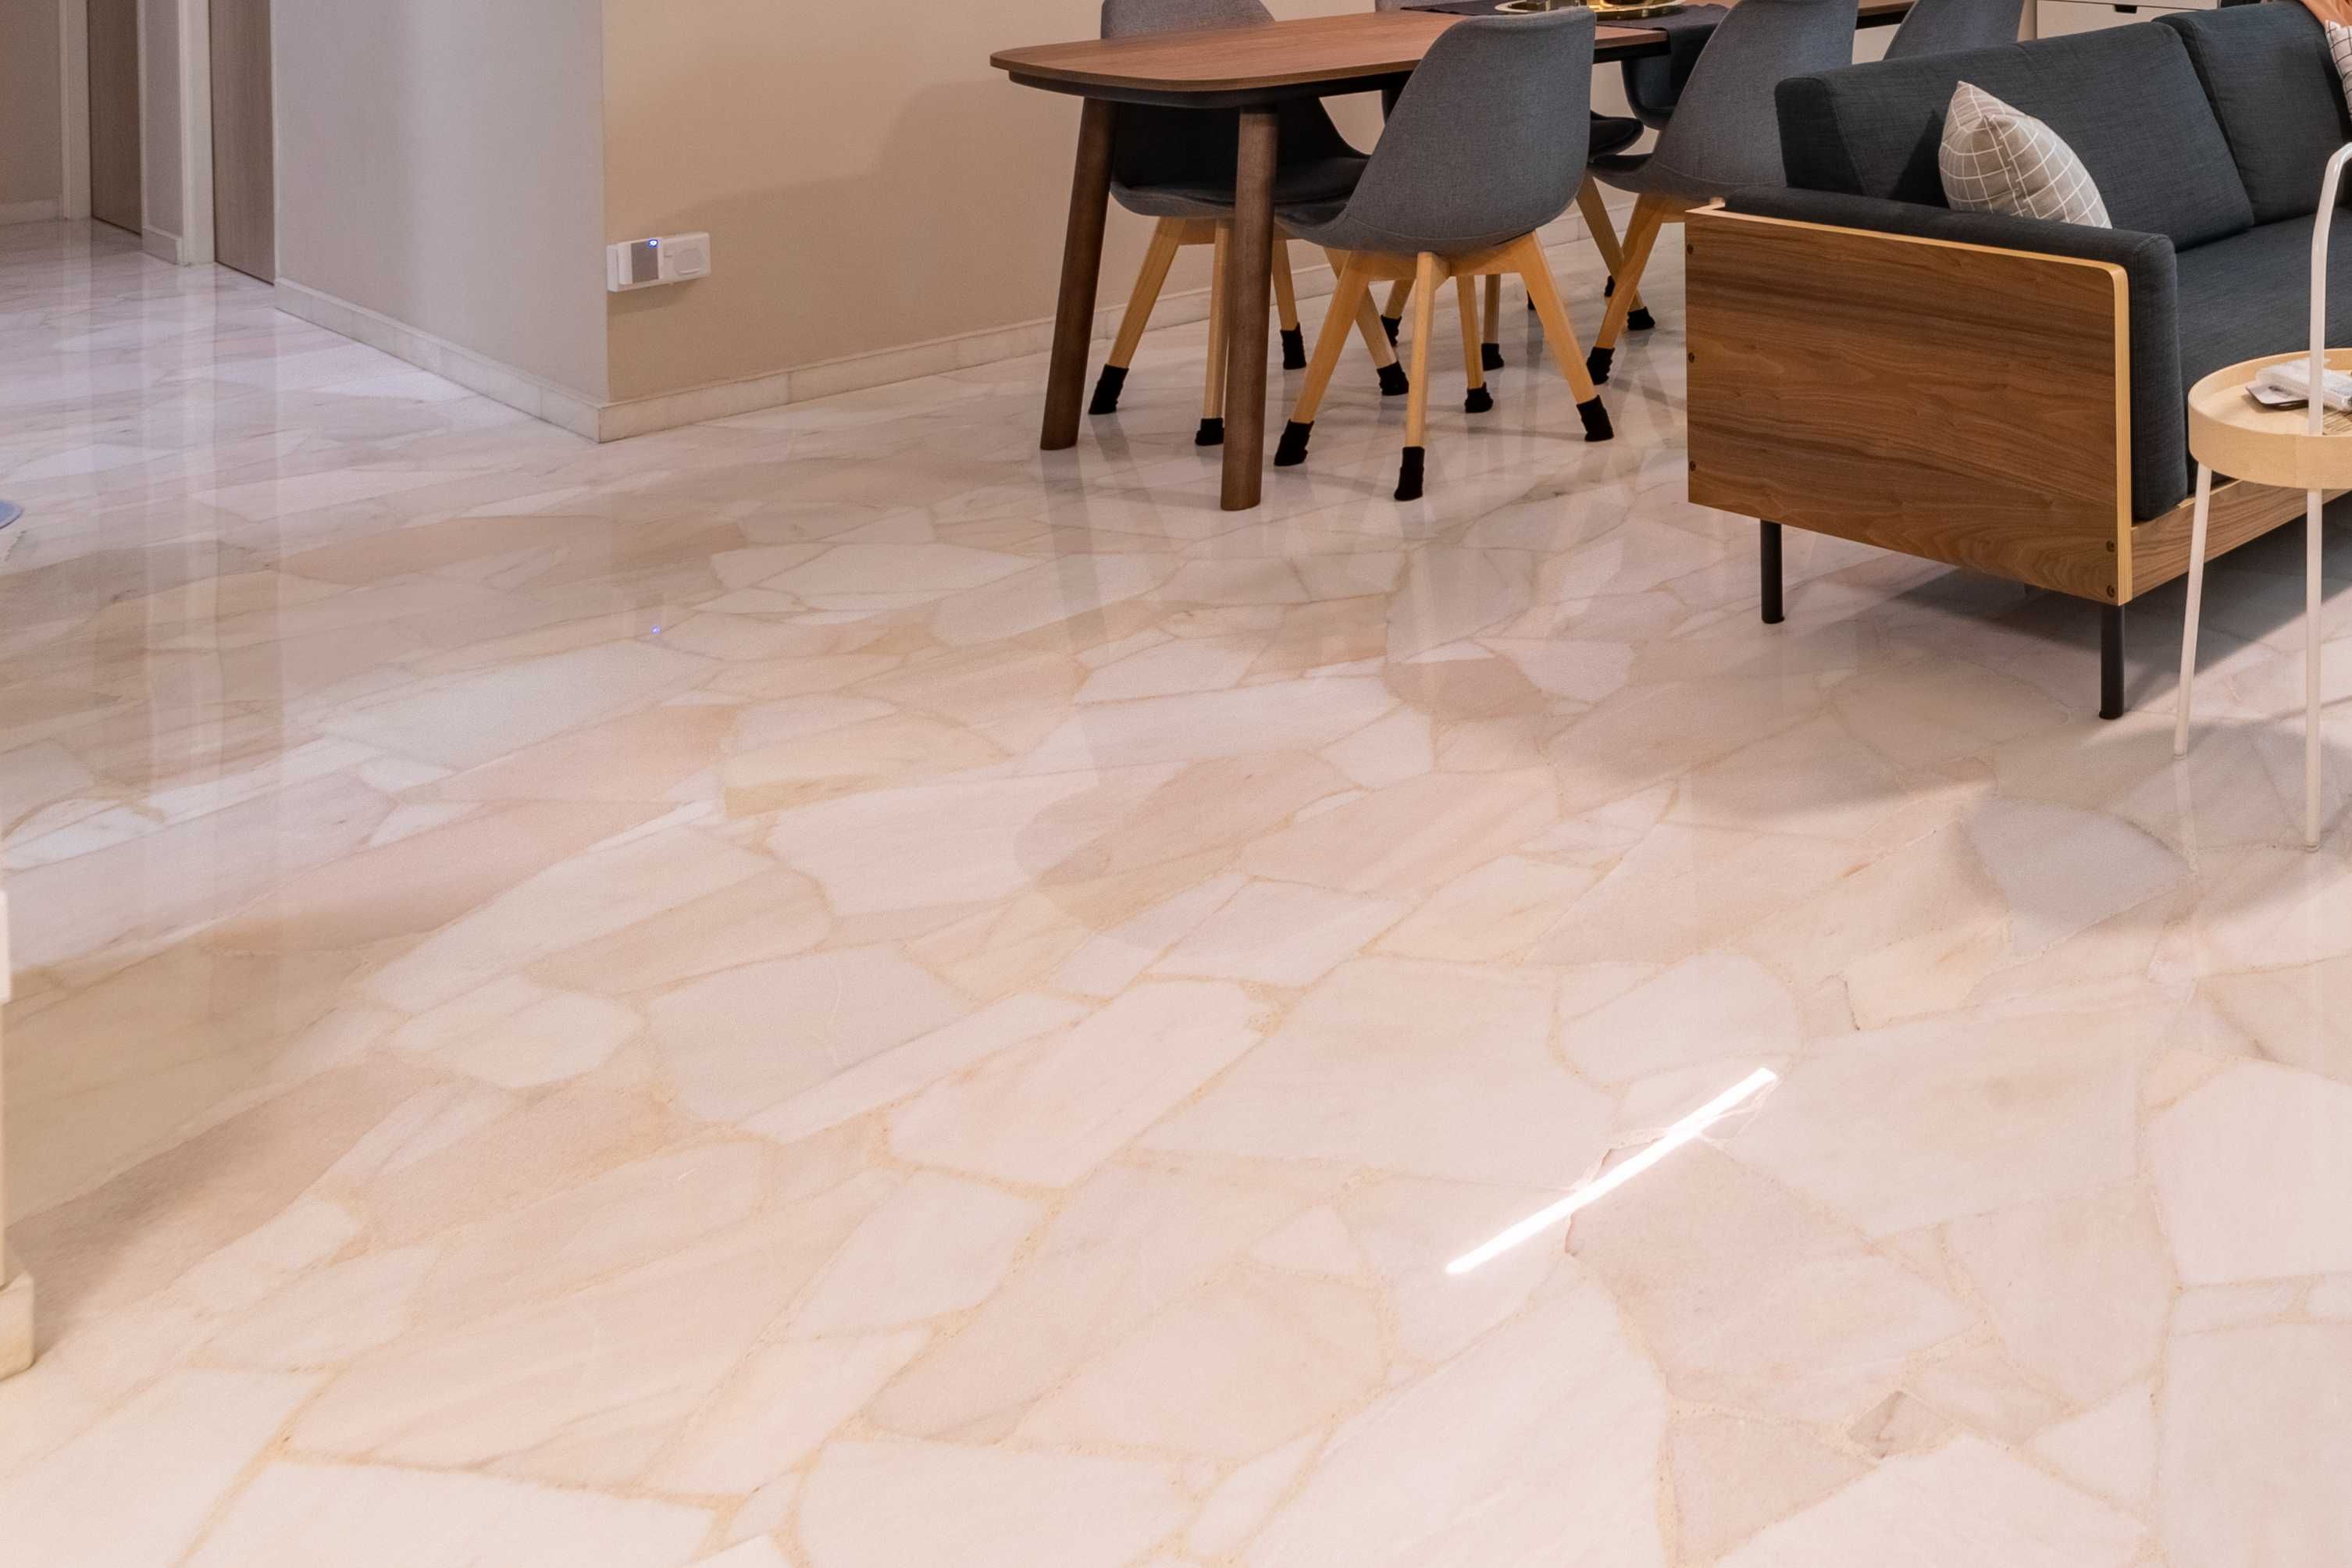 glossy ivory marble floor tiles design | livspace